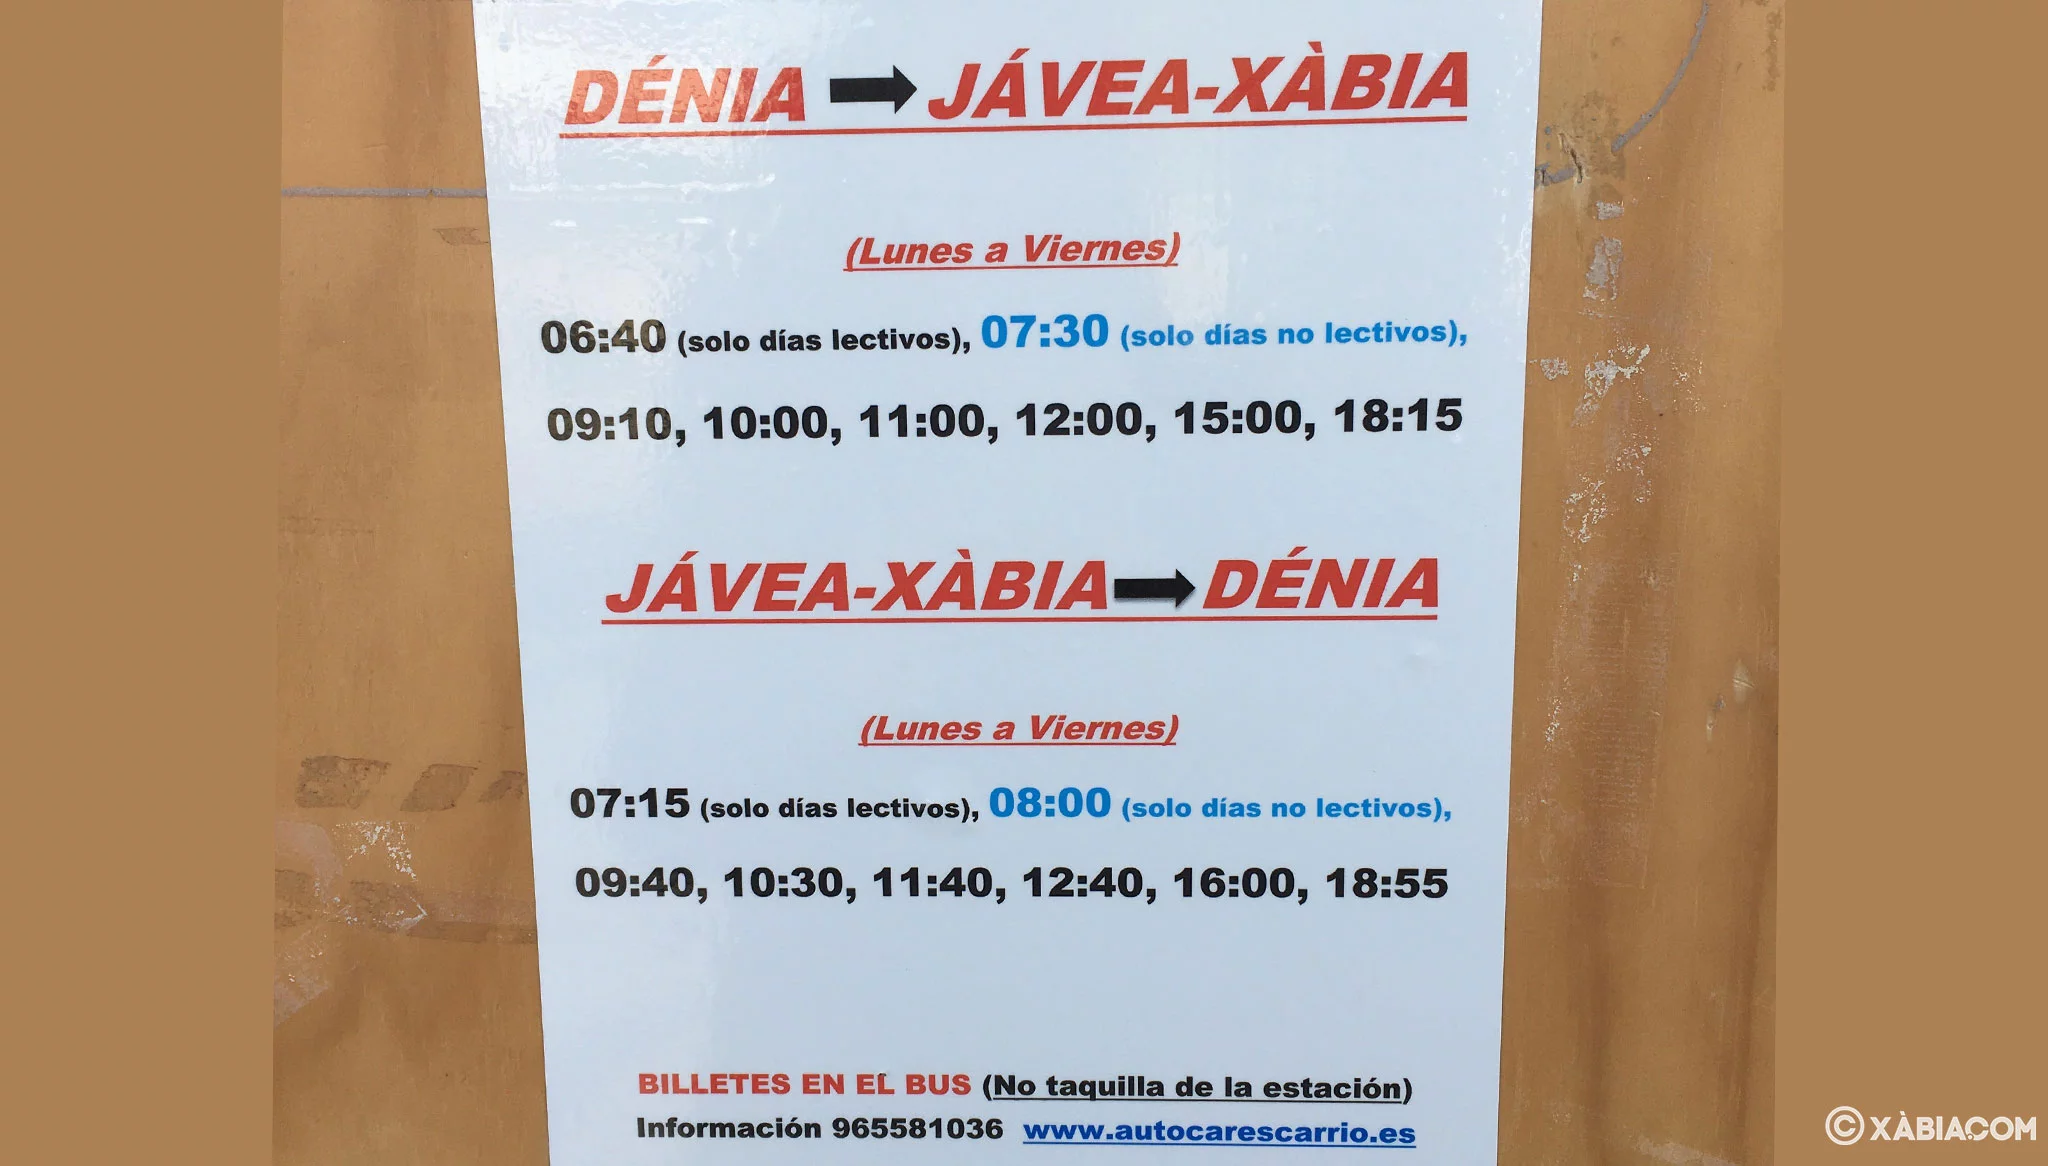 Folleto informativo sobre los horarios entre Dénia y Jávea colgado en la estación de autobuses